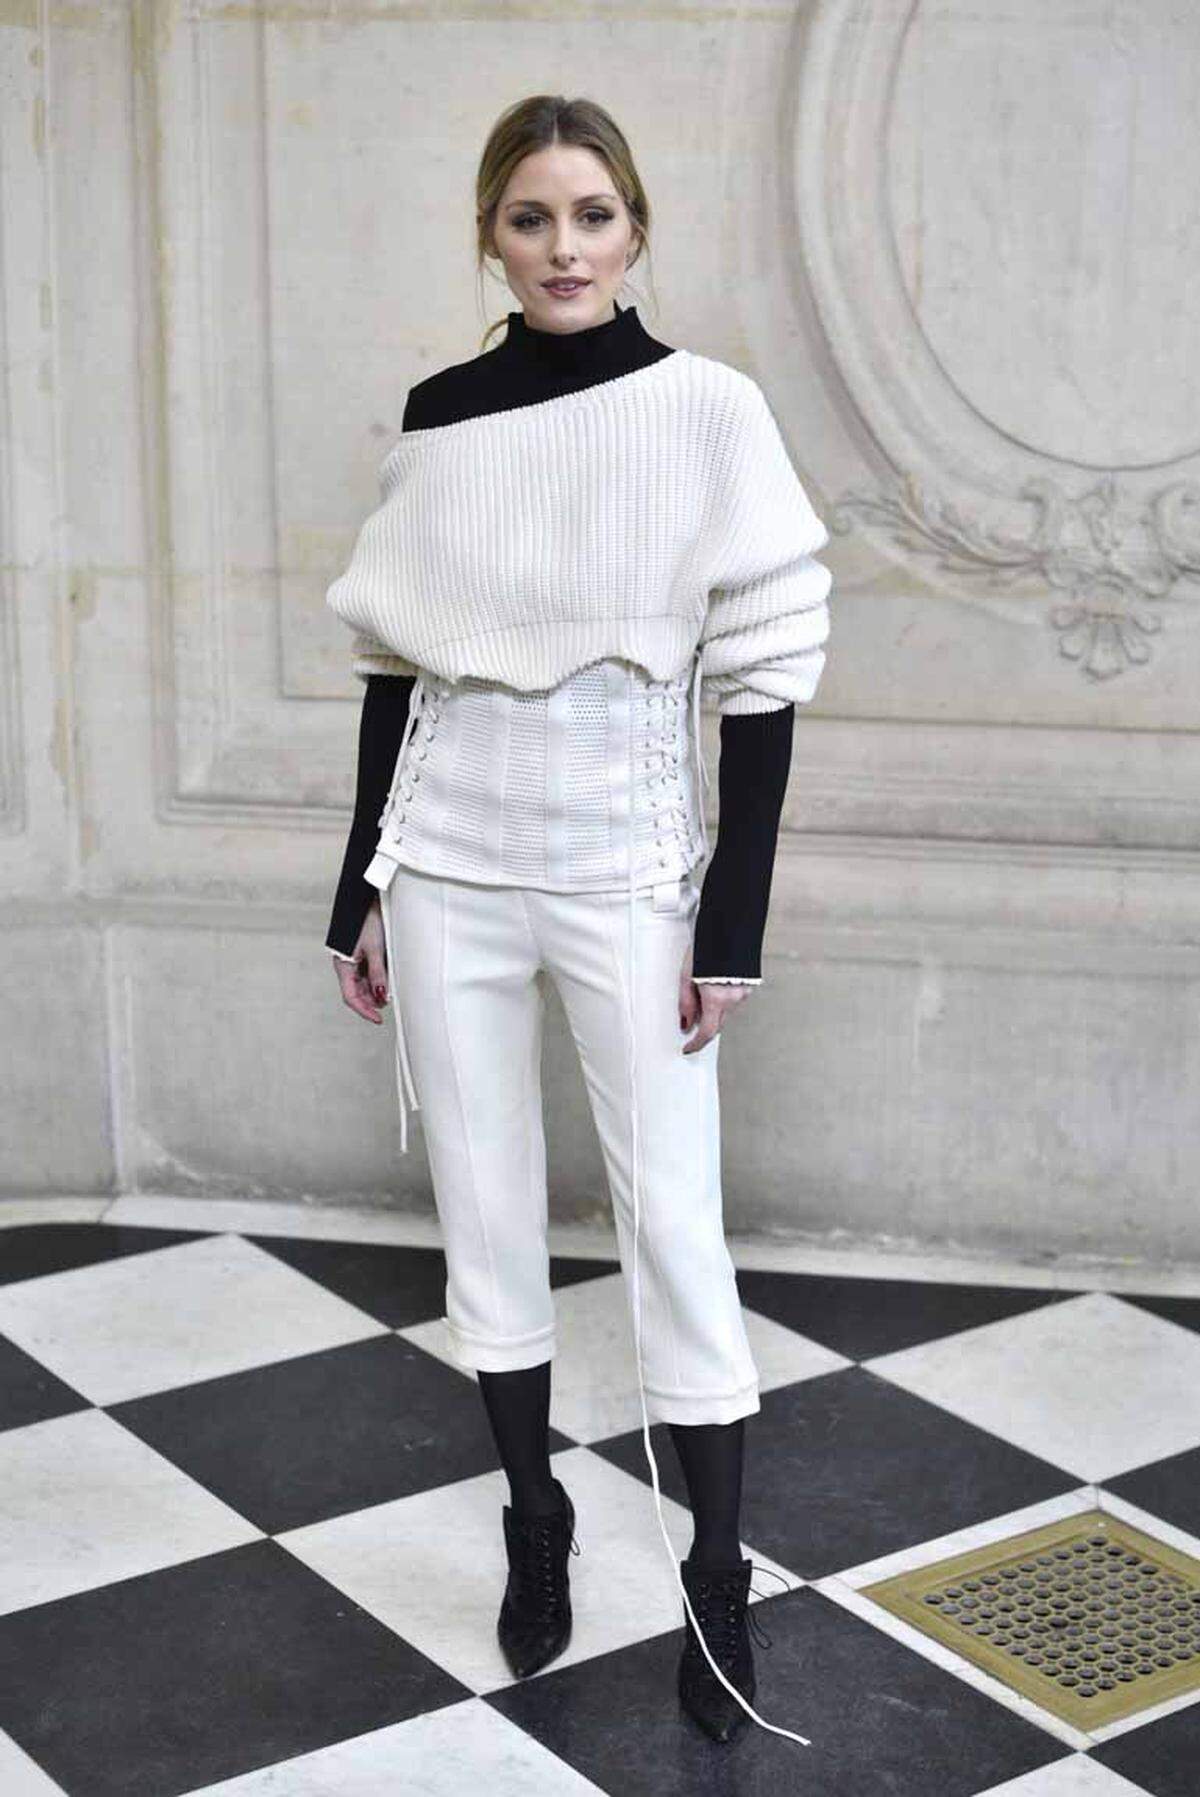 Viele Stars interessierten sich für die neuen Entwürfe, die bei den Haute Couture Schauen in Paris präsentiert wurden. Streetstyle-Star Olivia Palermo ist ein gern gesehener Gast in der Front Row. Zu Dior erschien sie in einem schwarz-weißen Ensemble.